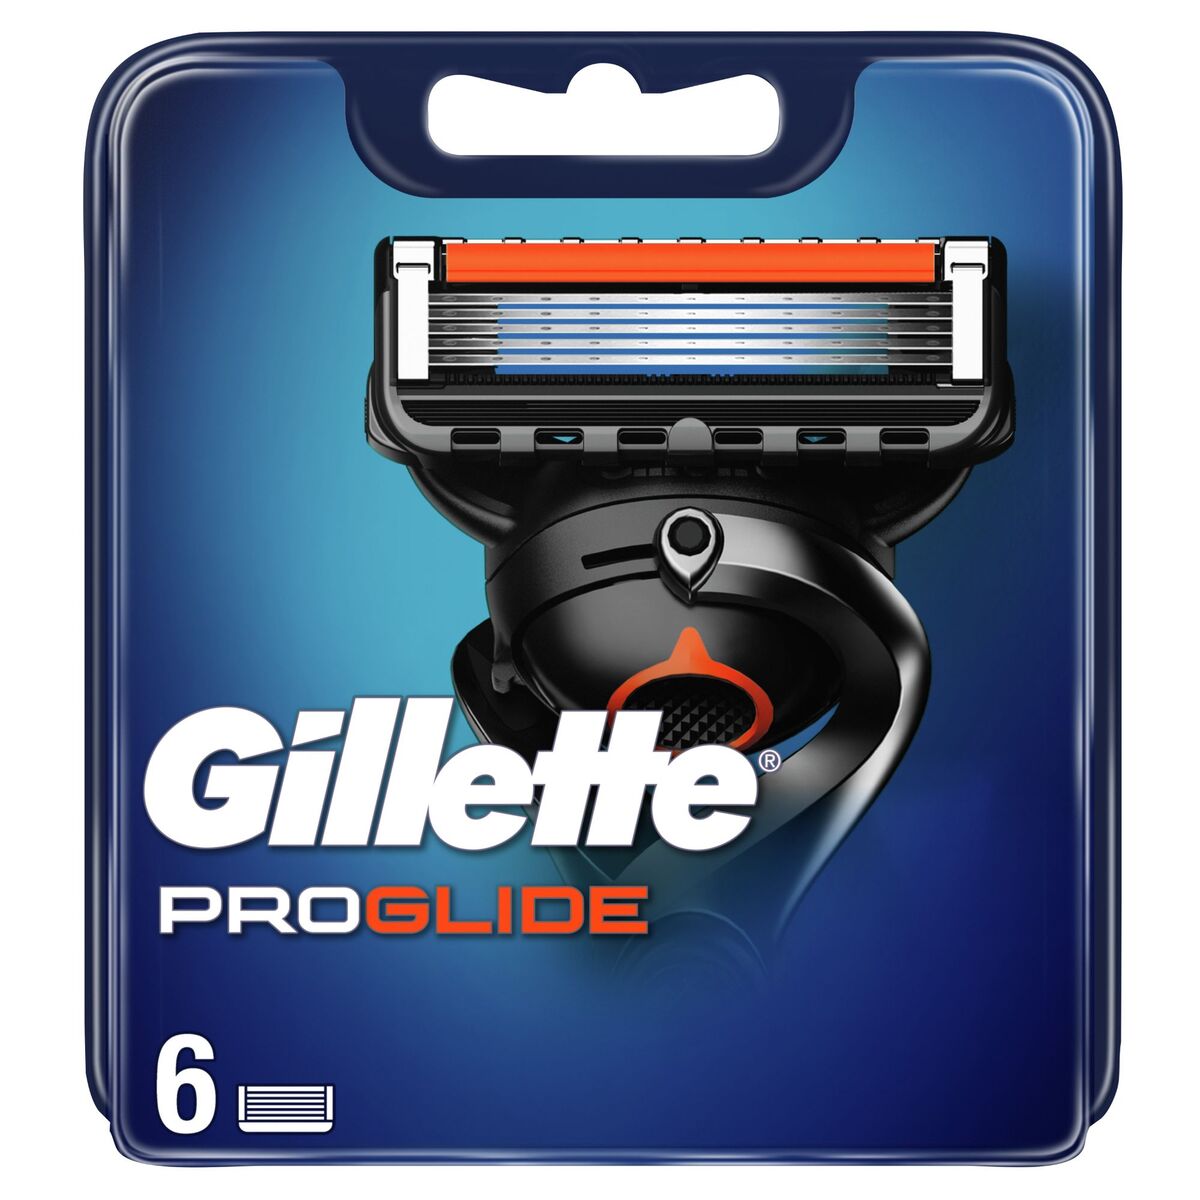 Gillette Fusion 5 ProGlide Men's Razor Blade Refills 6 pcs